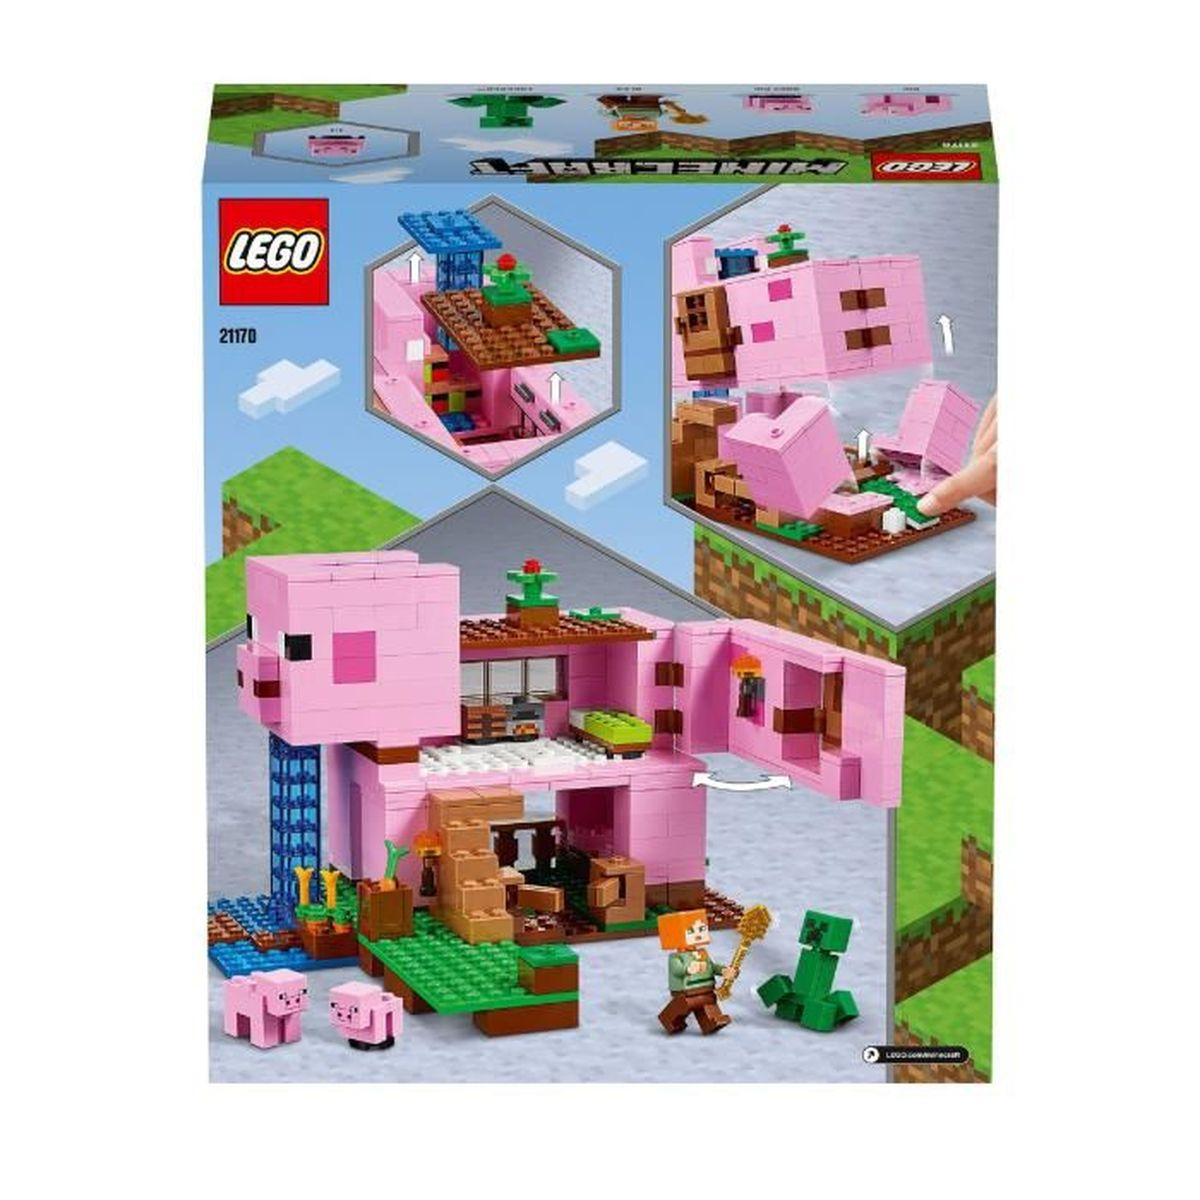 DAS LEGO LEGO SCHWEINEHAUS Minecraft 21170